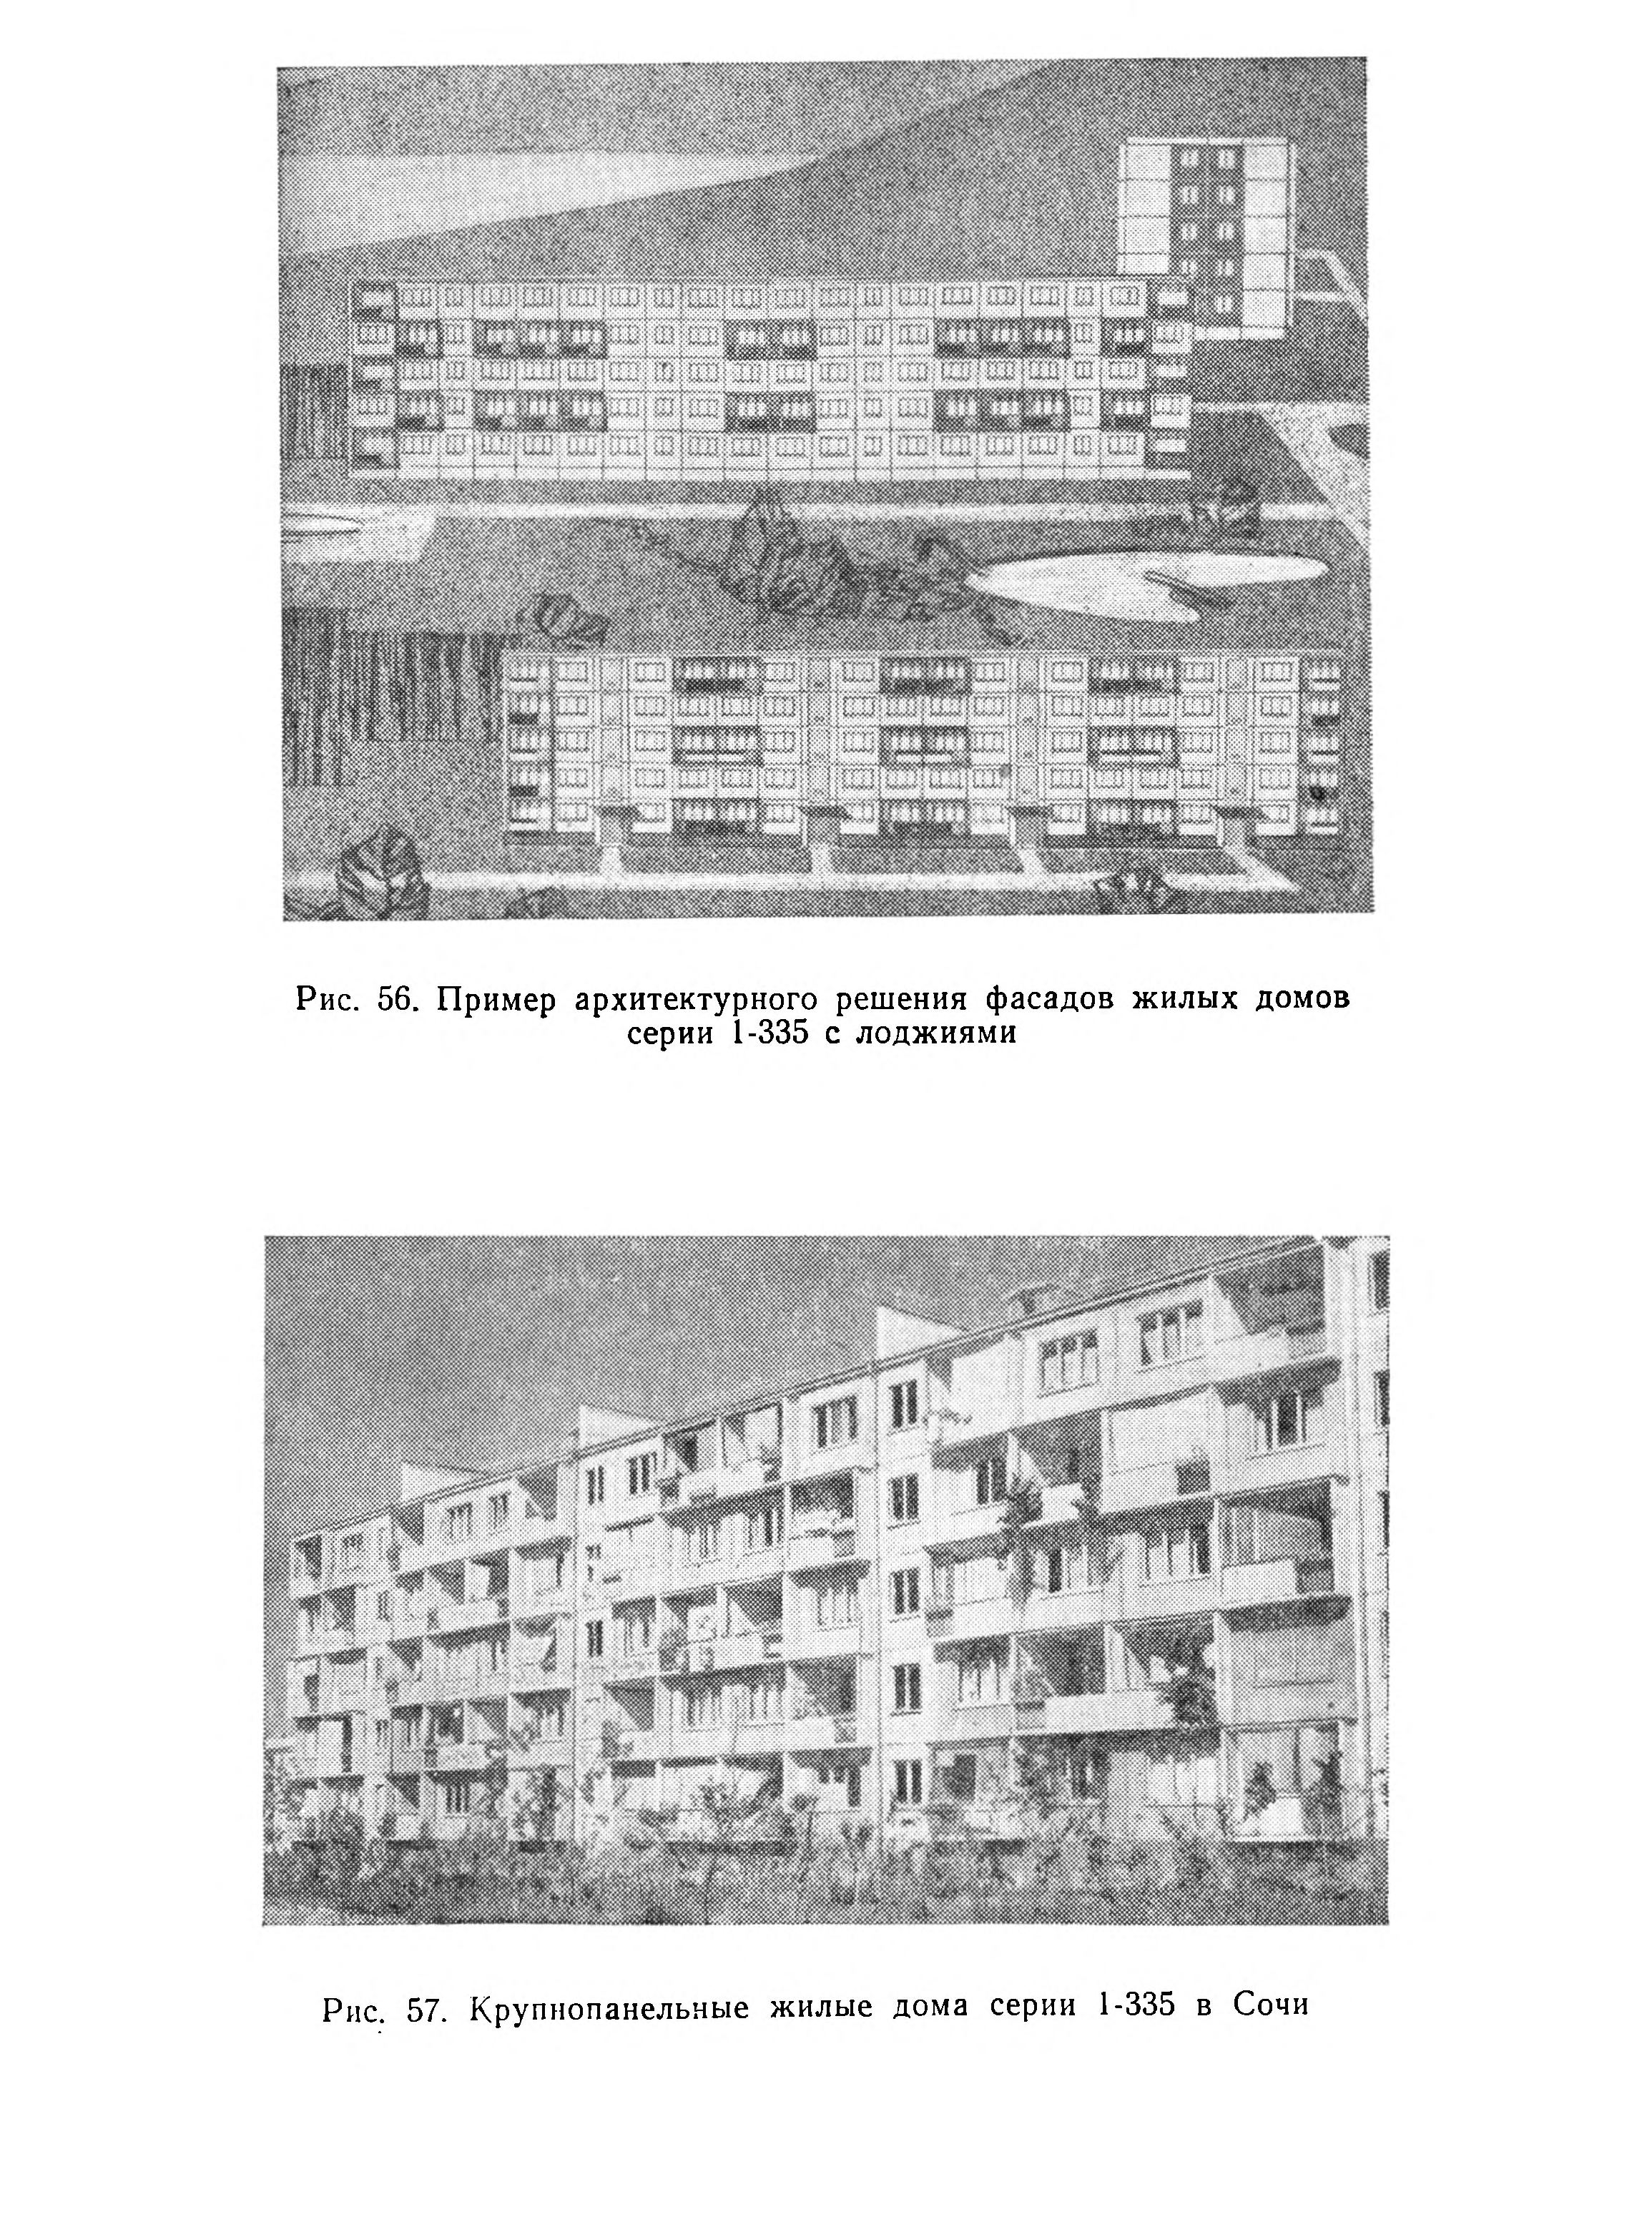 Пример архитектурного решения фасадов жилых домов серии 1-335 с лоджиями. Крупнопанельные жилые дома серии 1-335 в Сочи